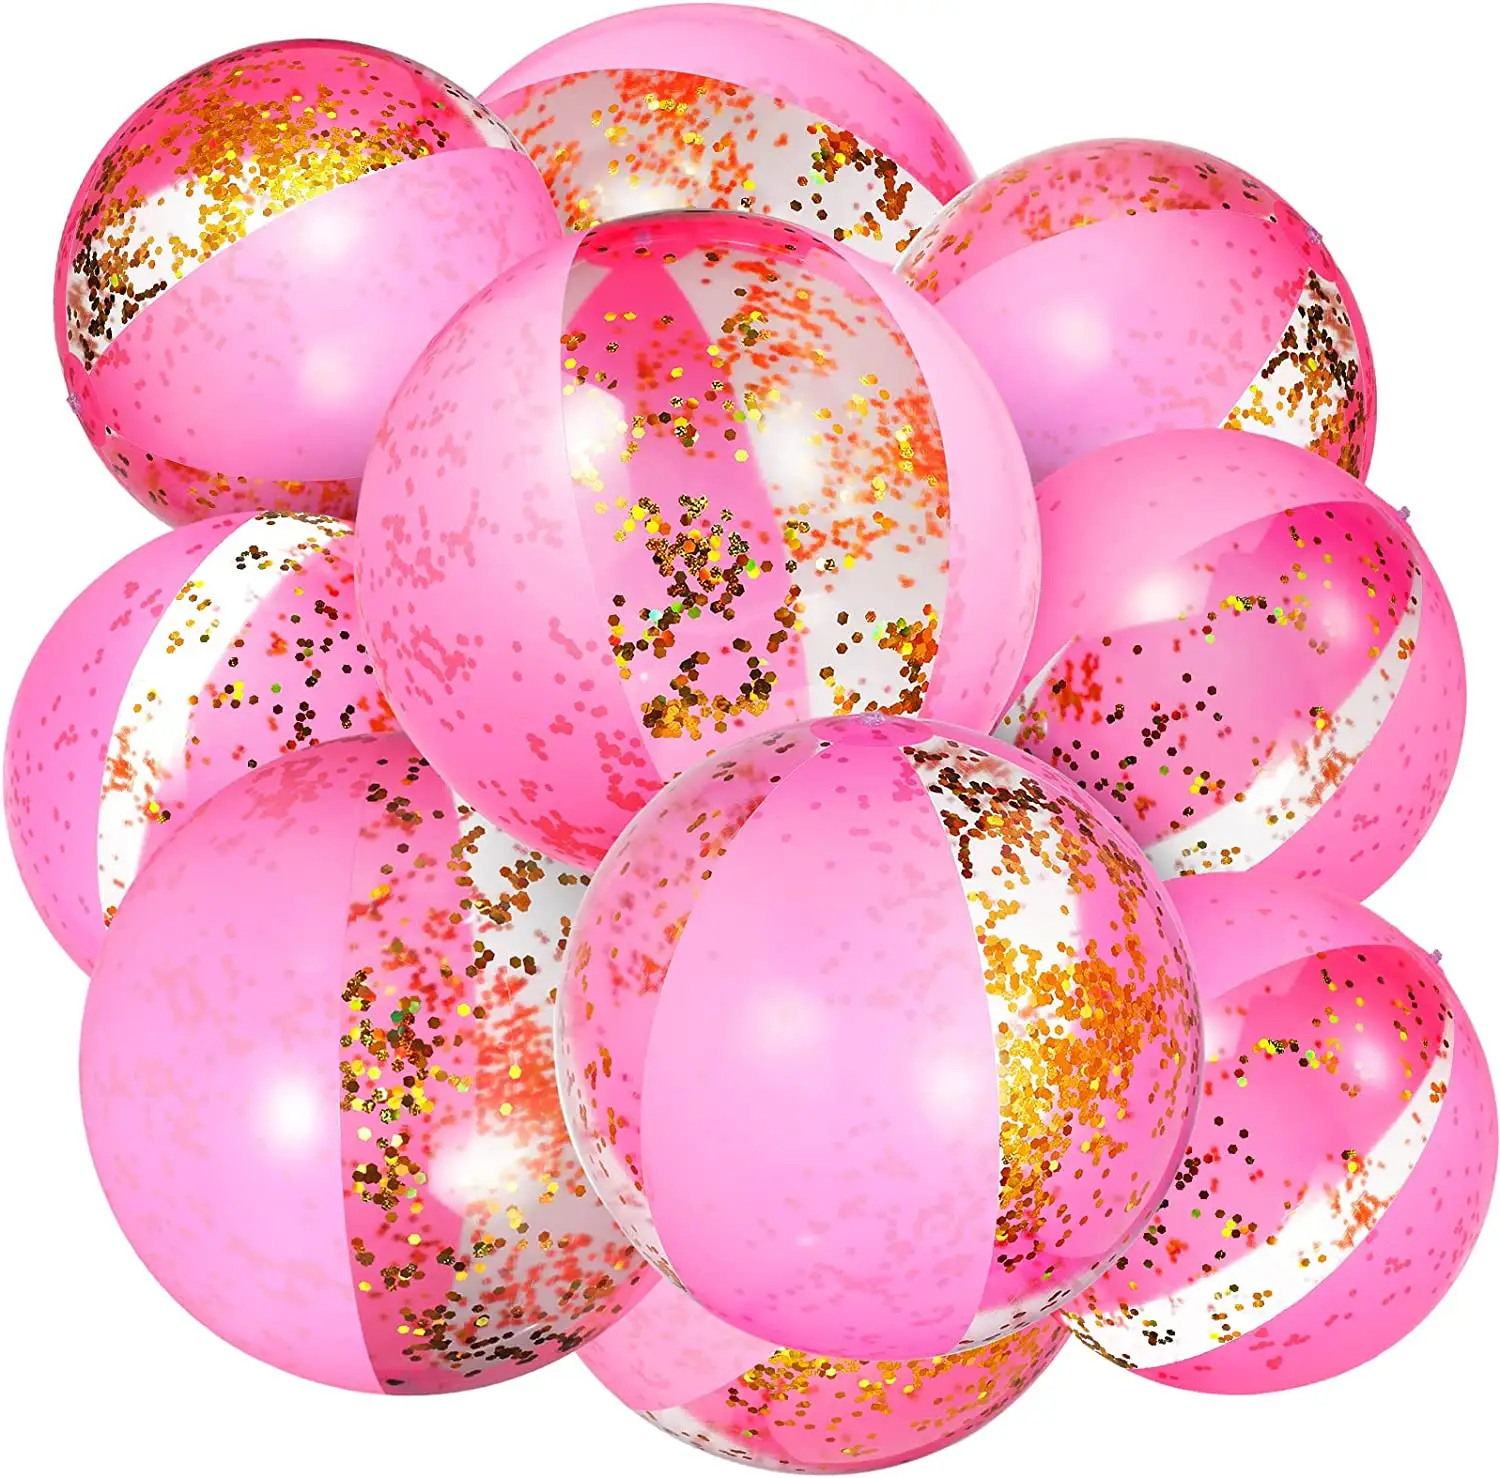 ग्लिटर समुद्र तट गेंदों थोक 16 इंच समुद्र तट गेंद स्विमिंग पूल पार्टी समुद्र तट गेंदों गुलाबी खिलौने